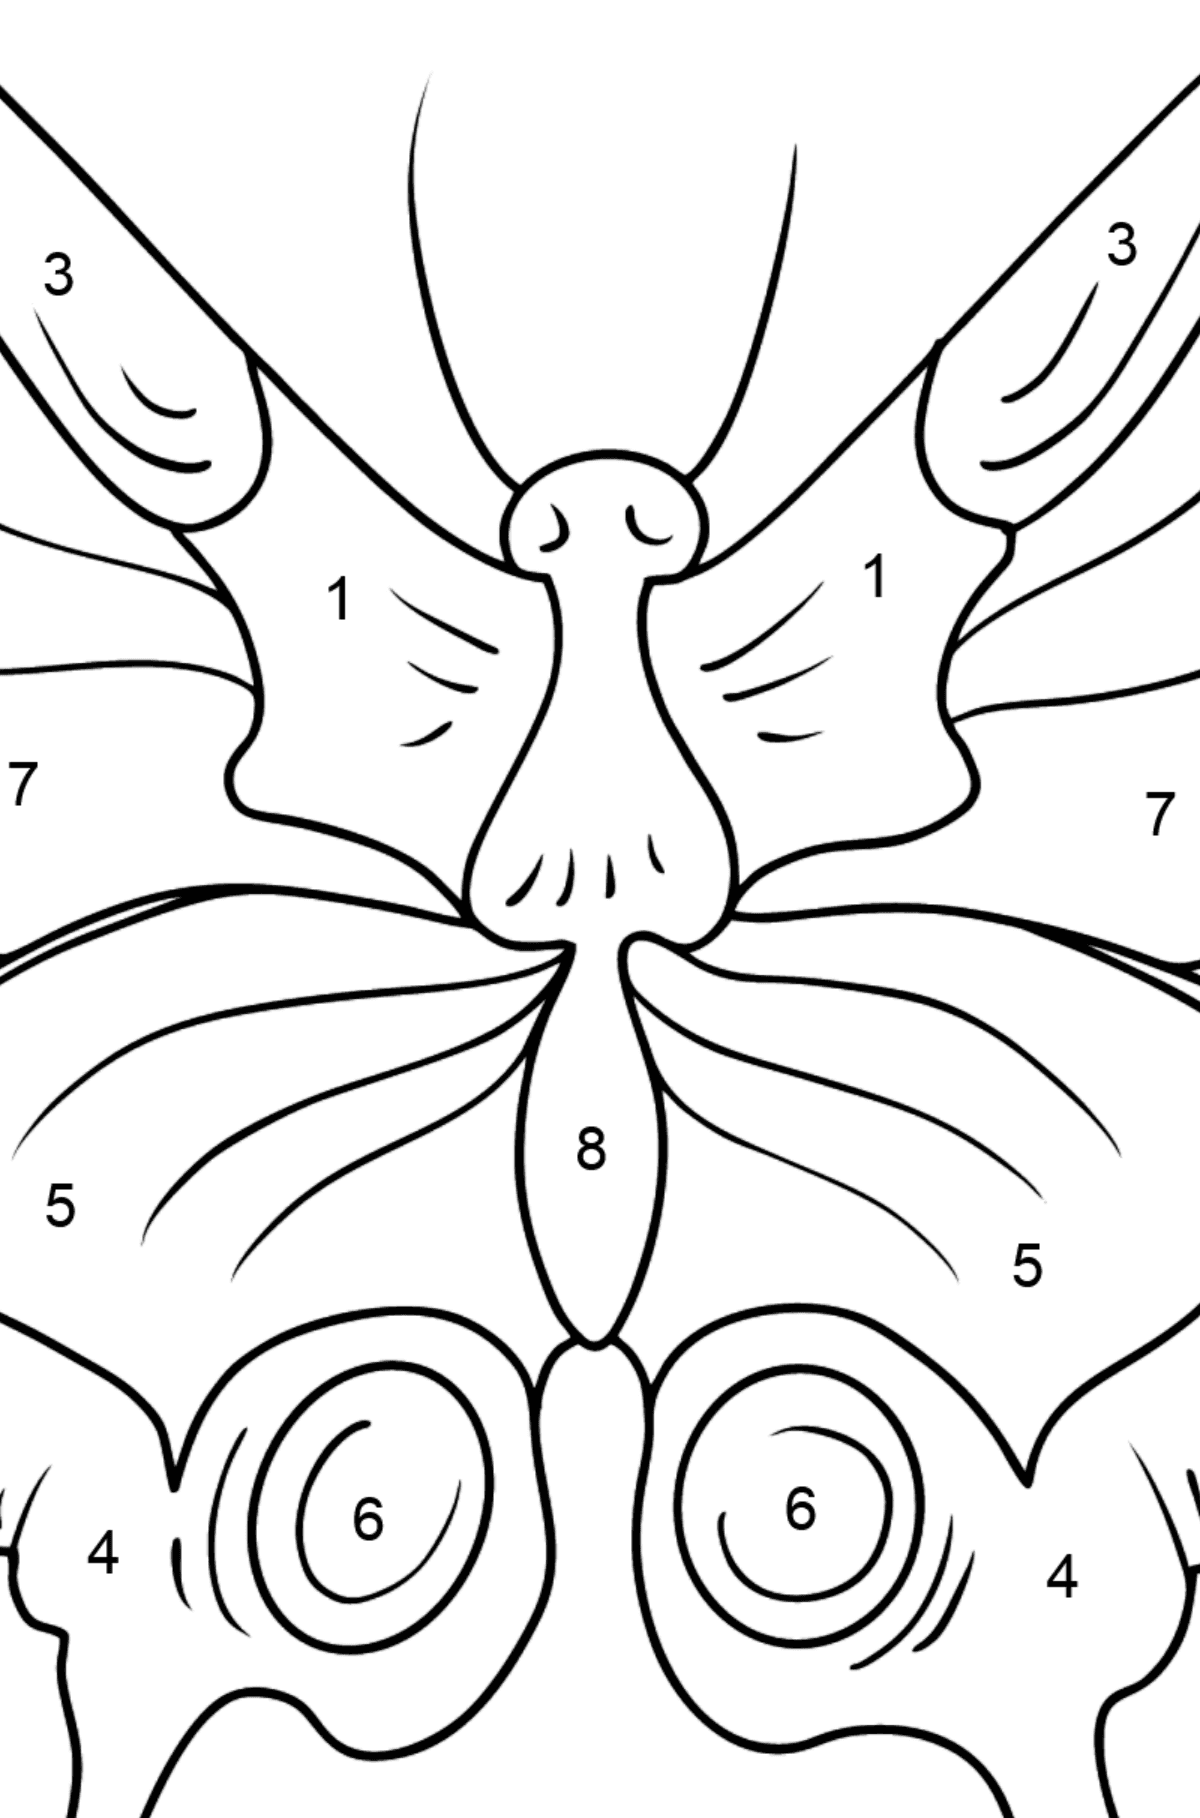 Omalovánka motýl otakárek - Omalovánka podle Čísel pro děti